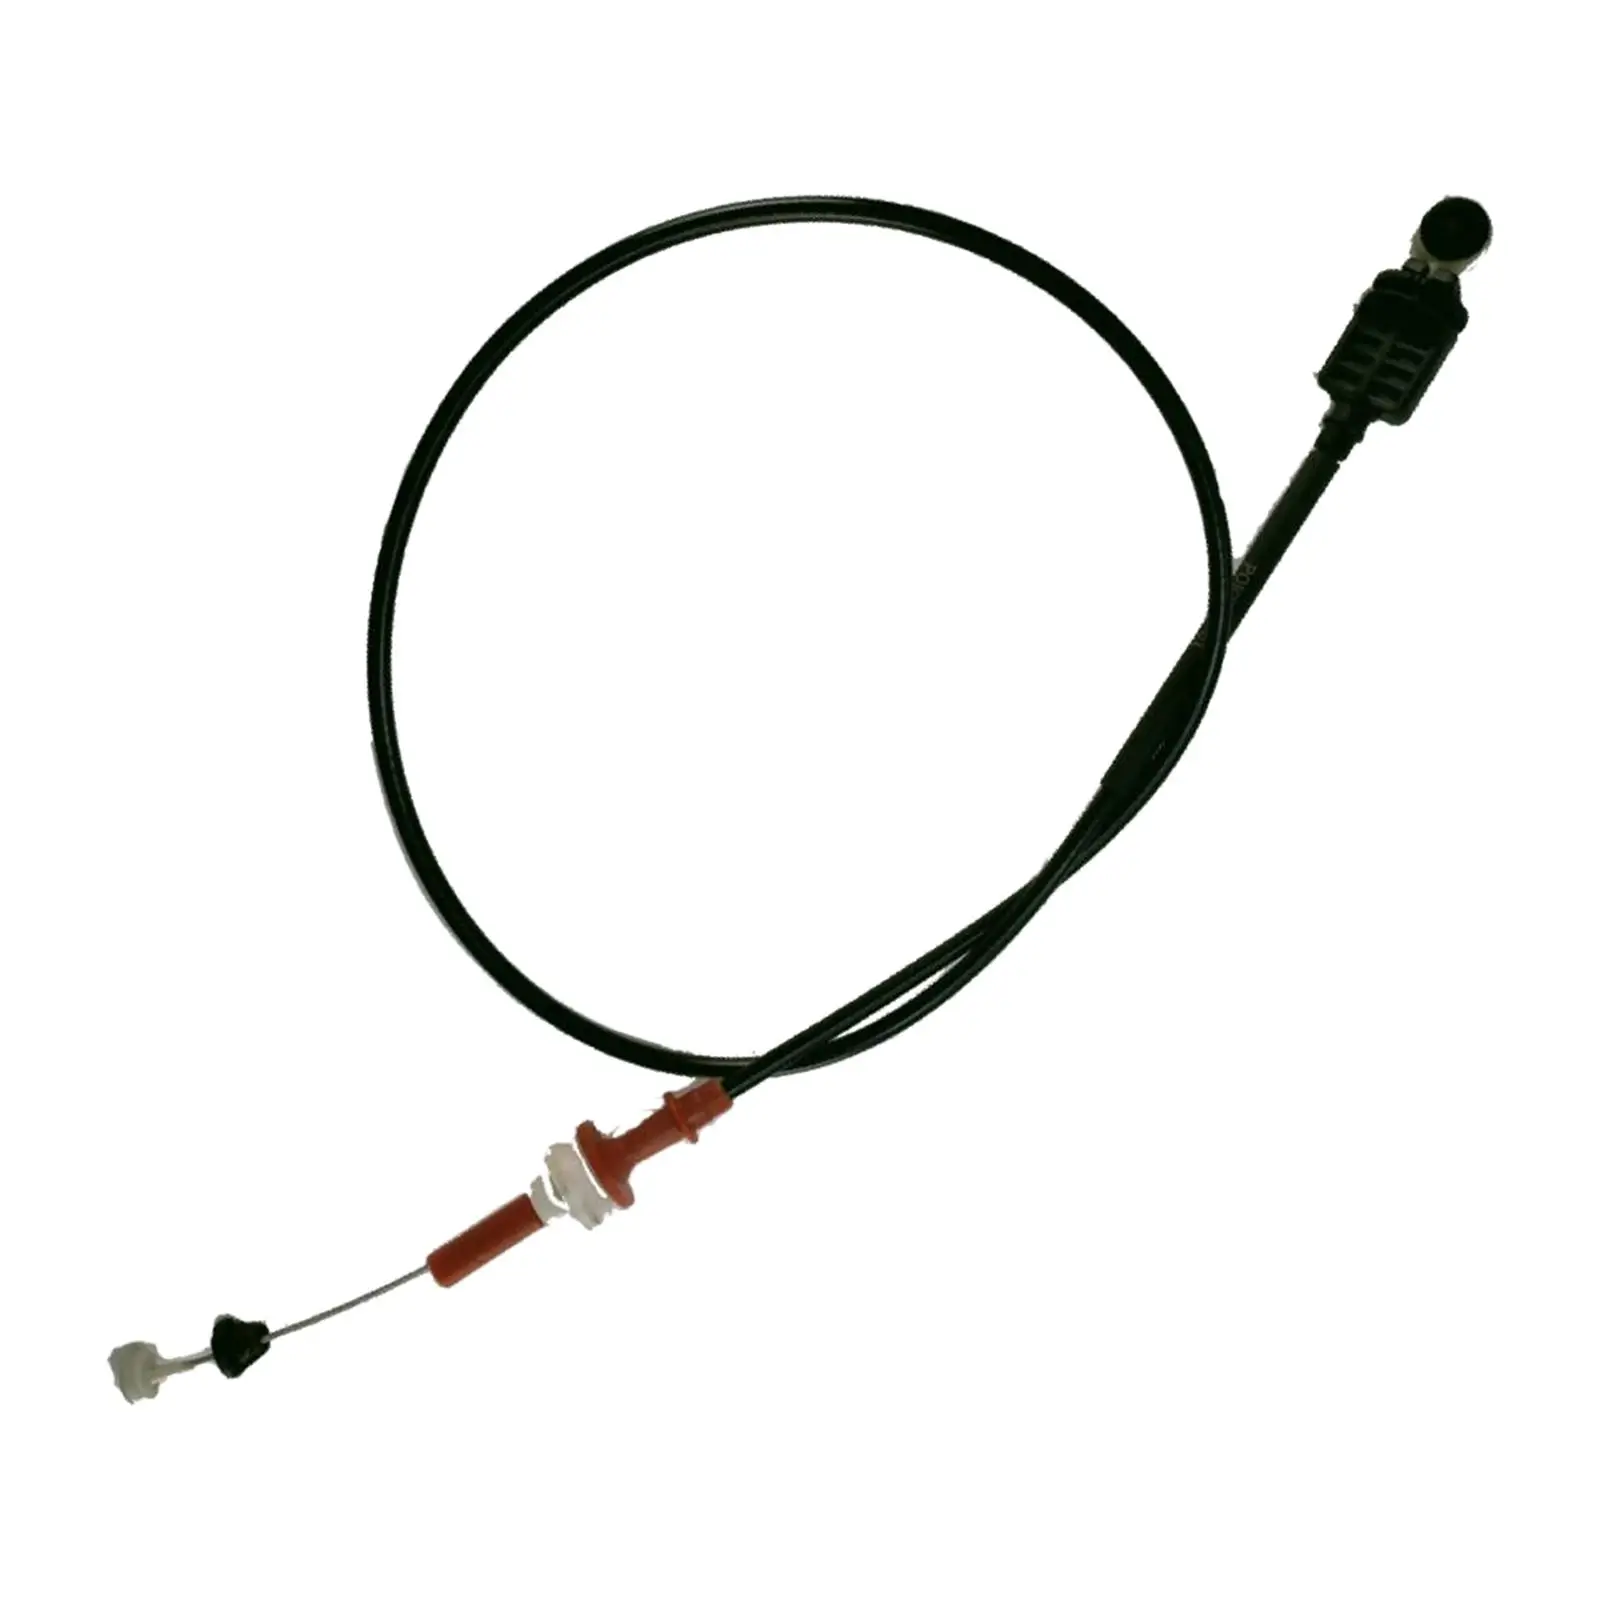 

Throttle Oil Cable Line Car Accessories 1S719C799DG for Mondeo MK3 2.0T